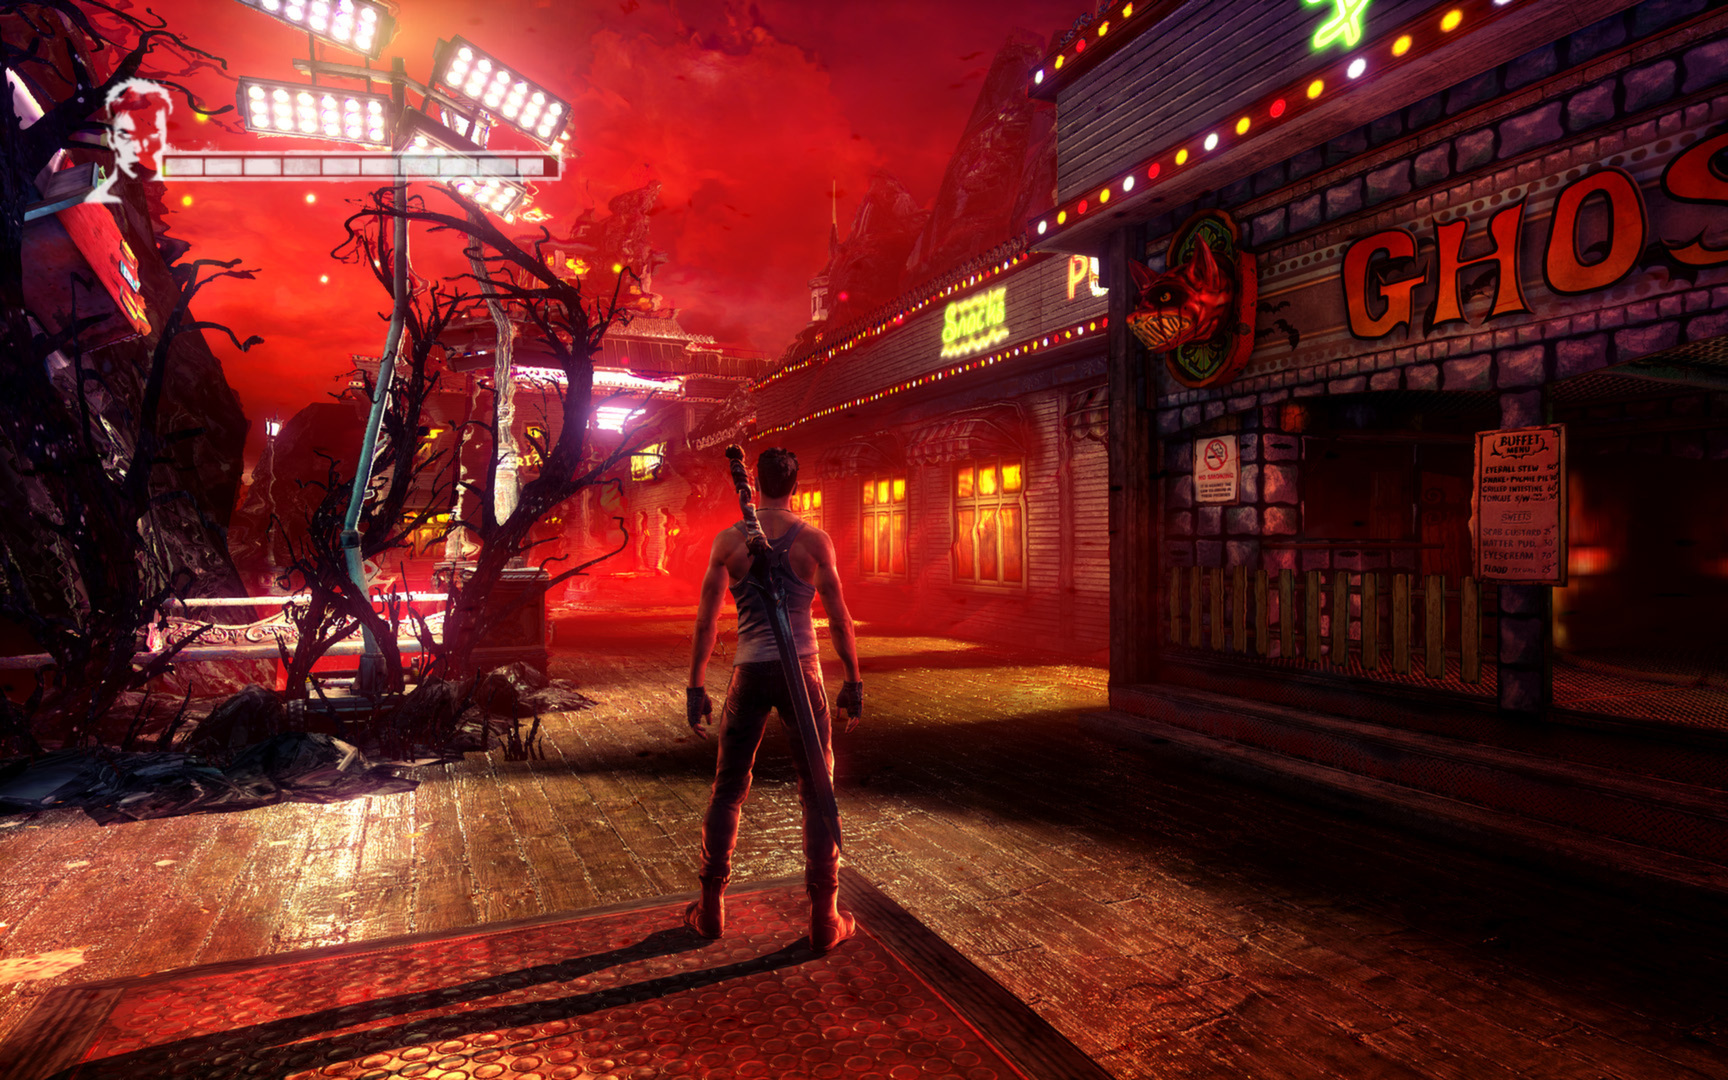 Habemus fecha y requisitos del 'DmC: Devil May Cry' de PC